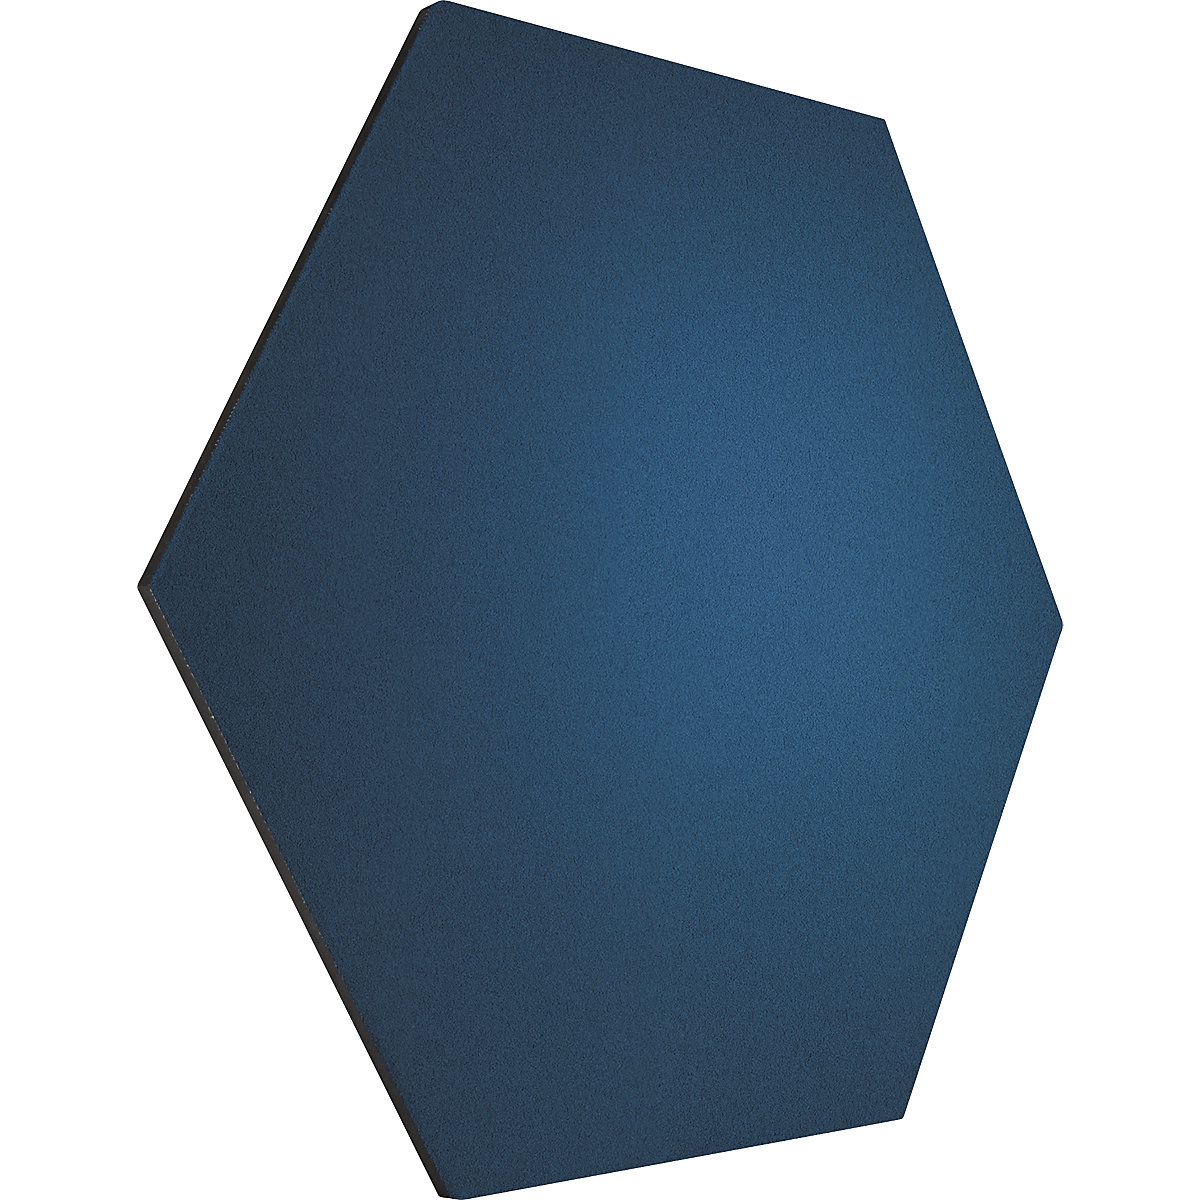 Tableau à épingles design hexagonal – Chameleon, liège, l x h 600 x 600 mm, bleu foncé-27